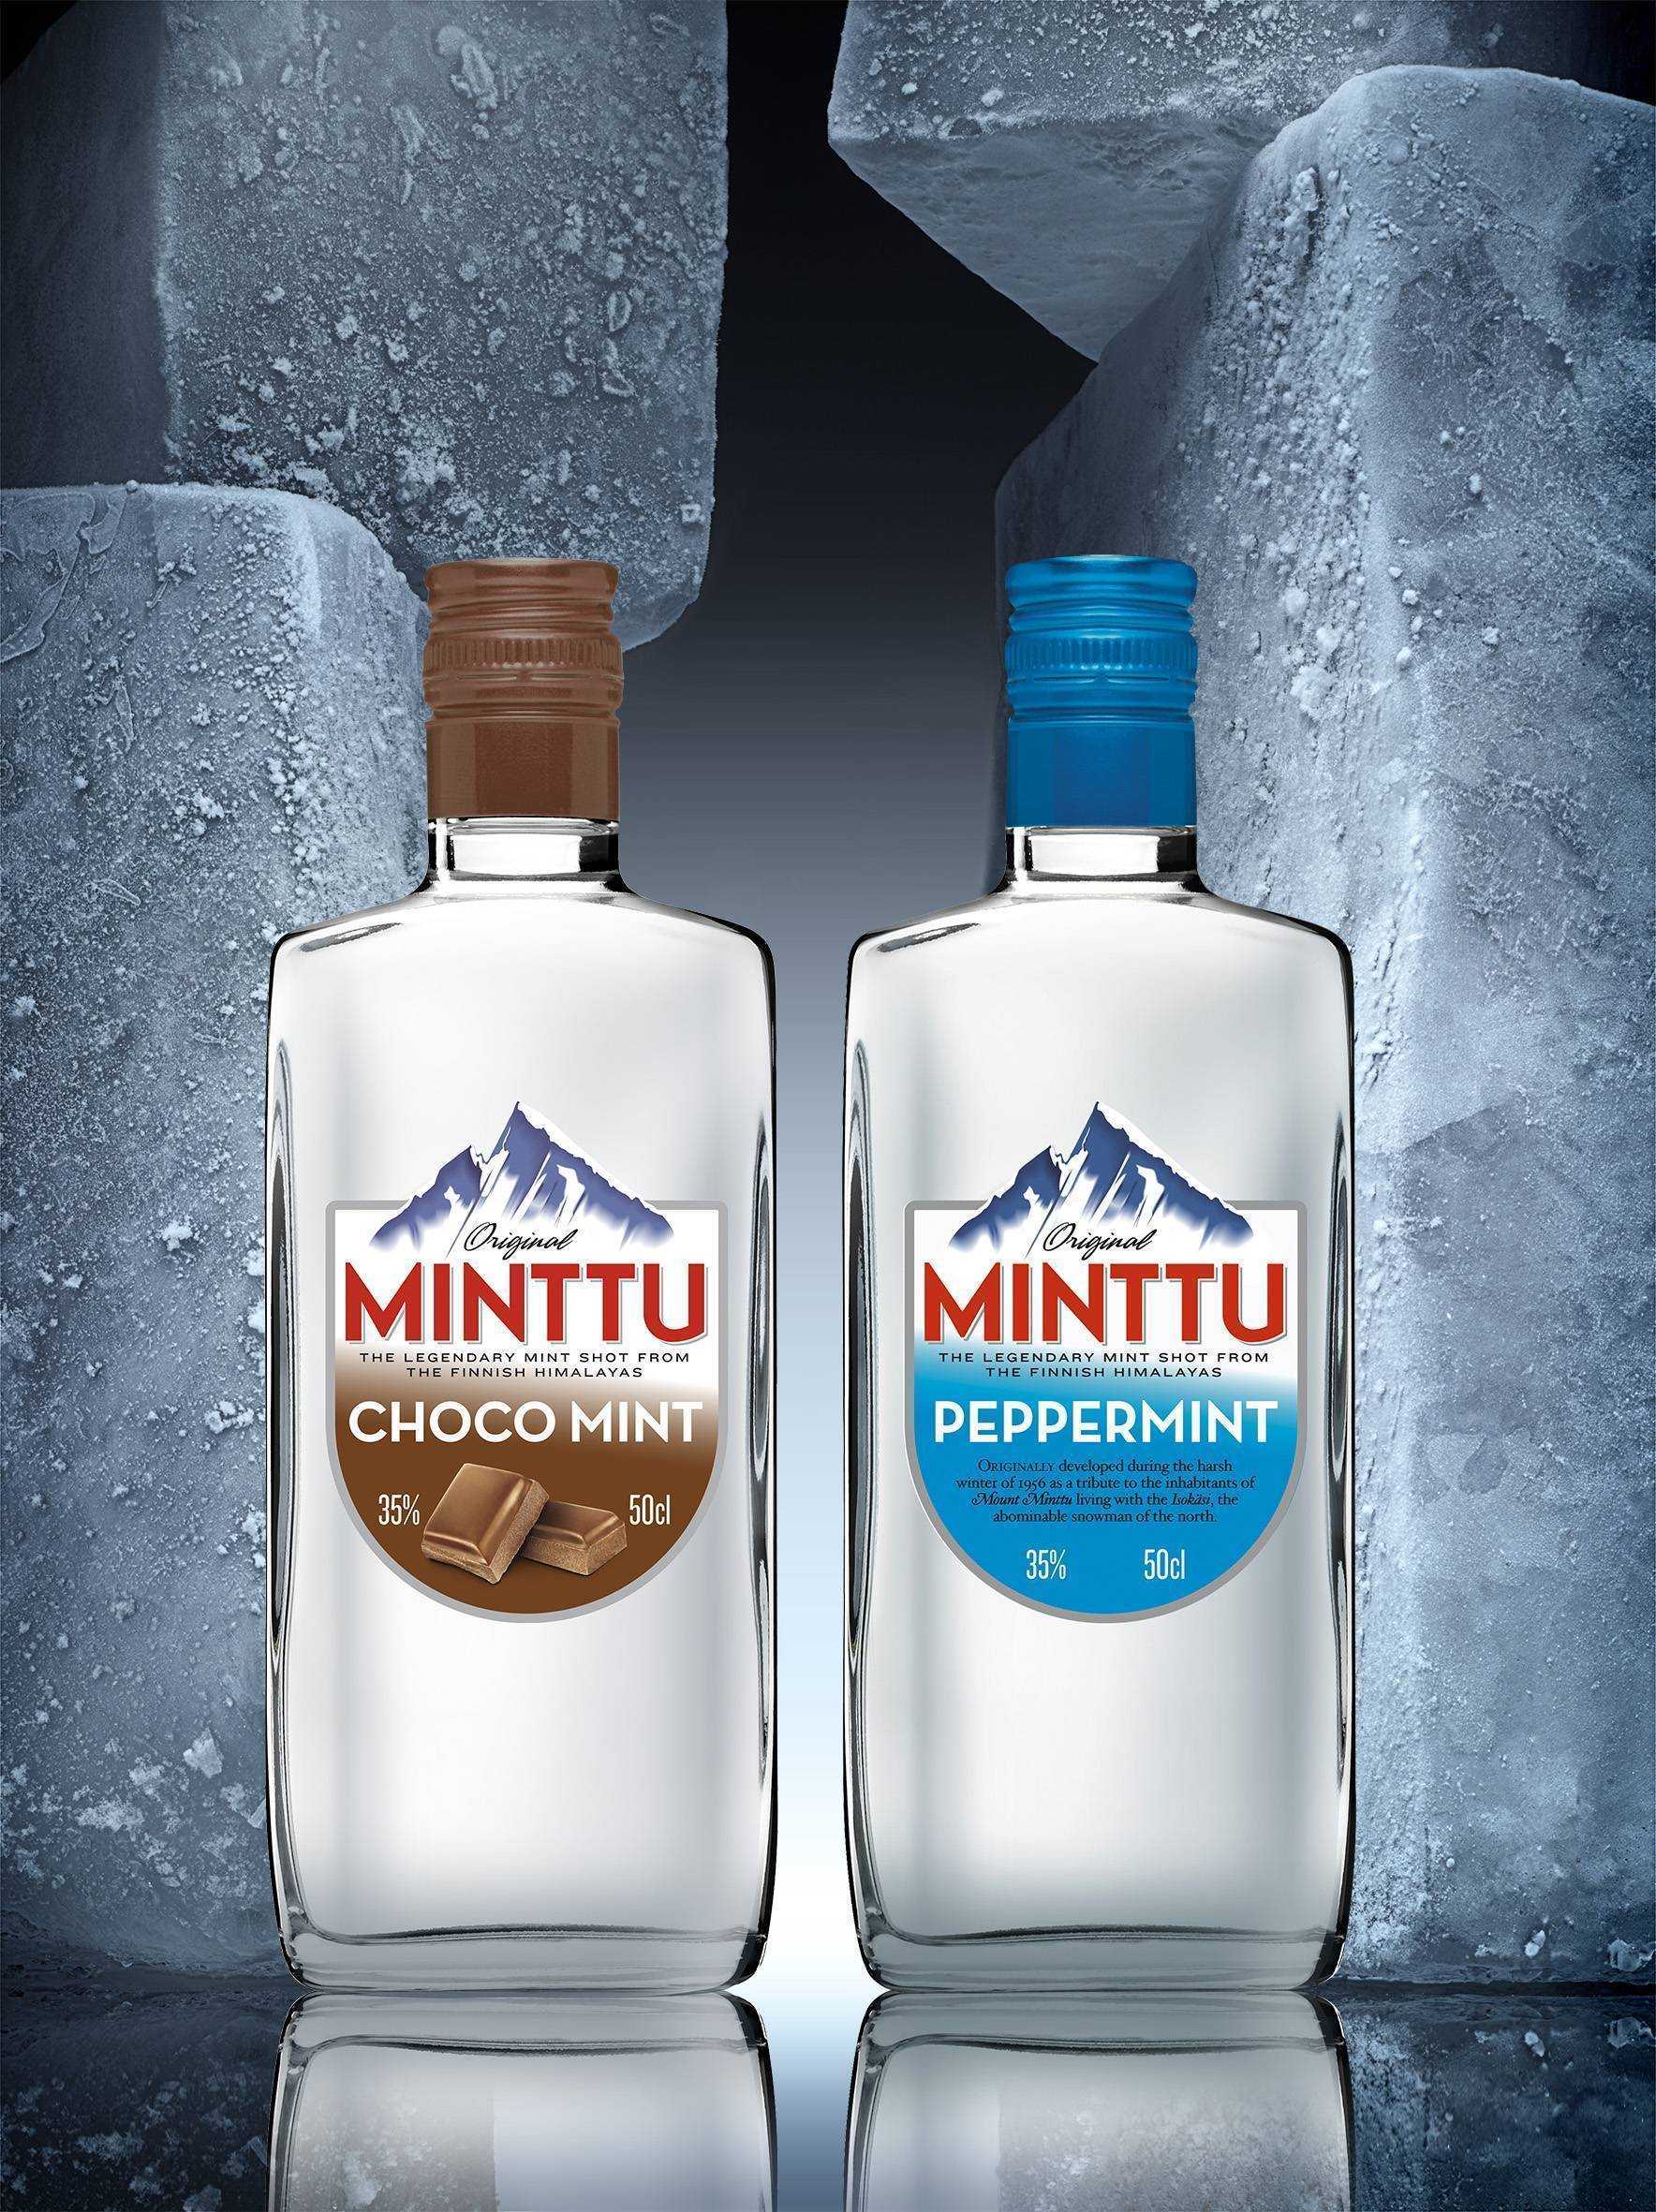 Ликер минту (minttu) – мятный кусочек северного холода